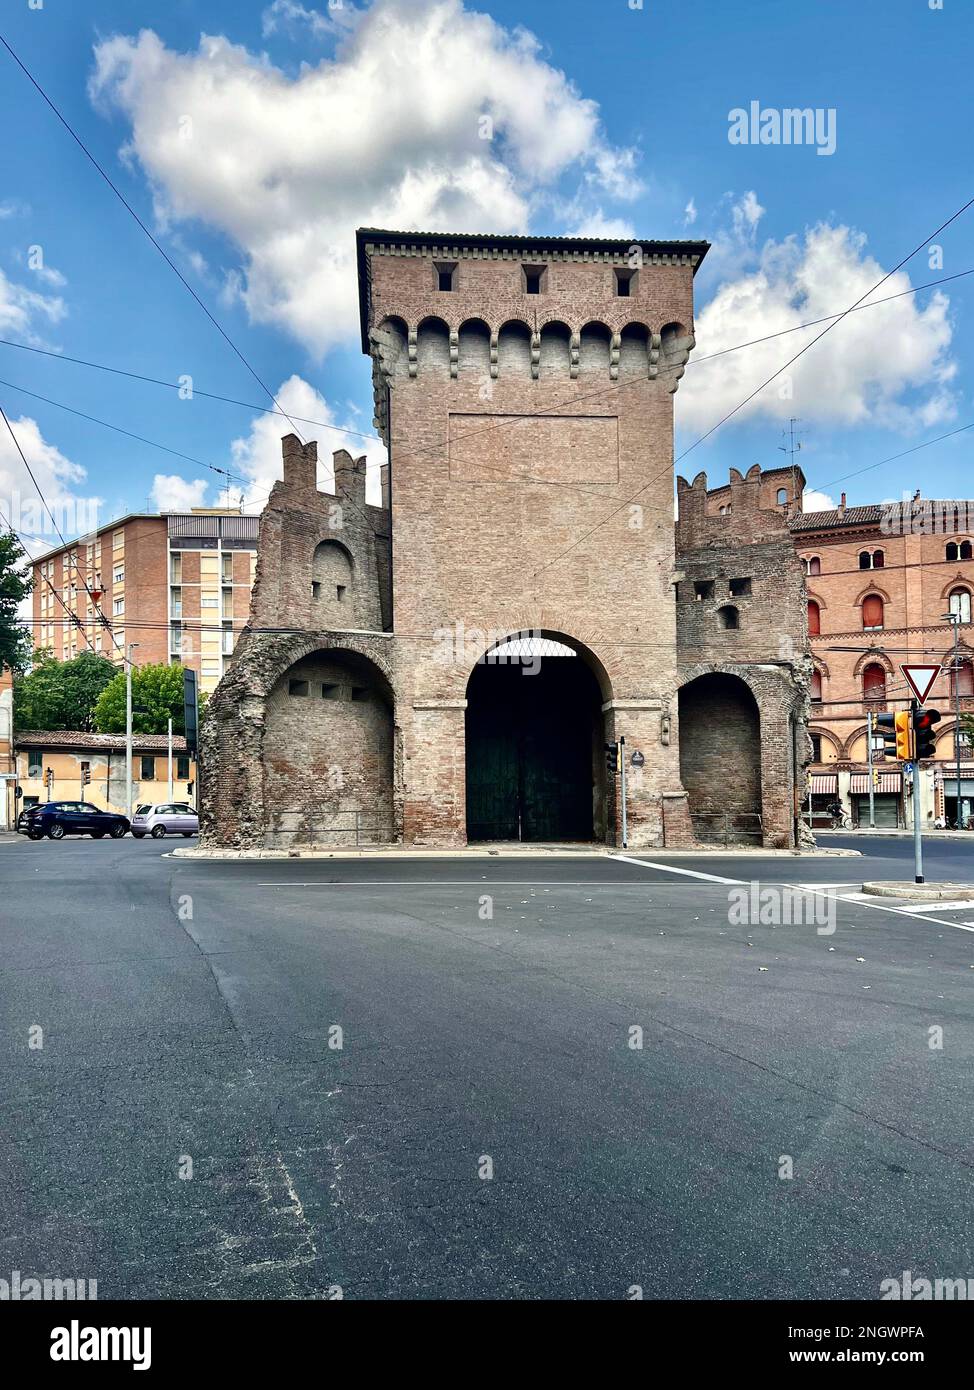 Situata sulla piovana principale dell'antica via Emilia, la porta San Felice del 13th° secolo sorge come un'isola al centro di un vivace incrocio in B Foto Stock